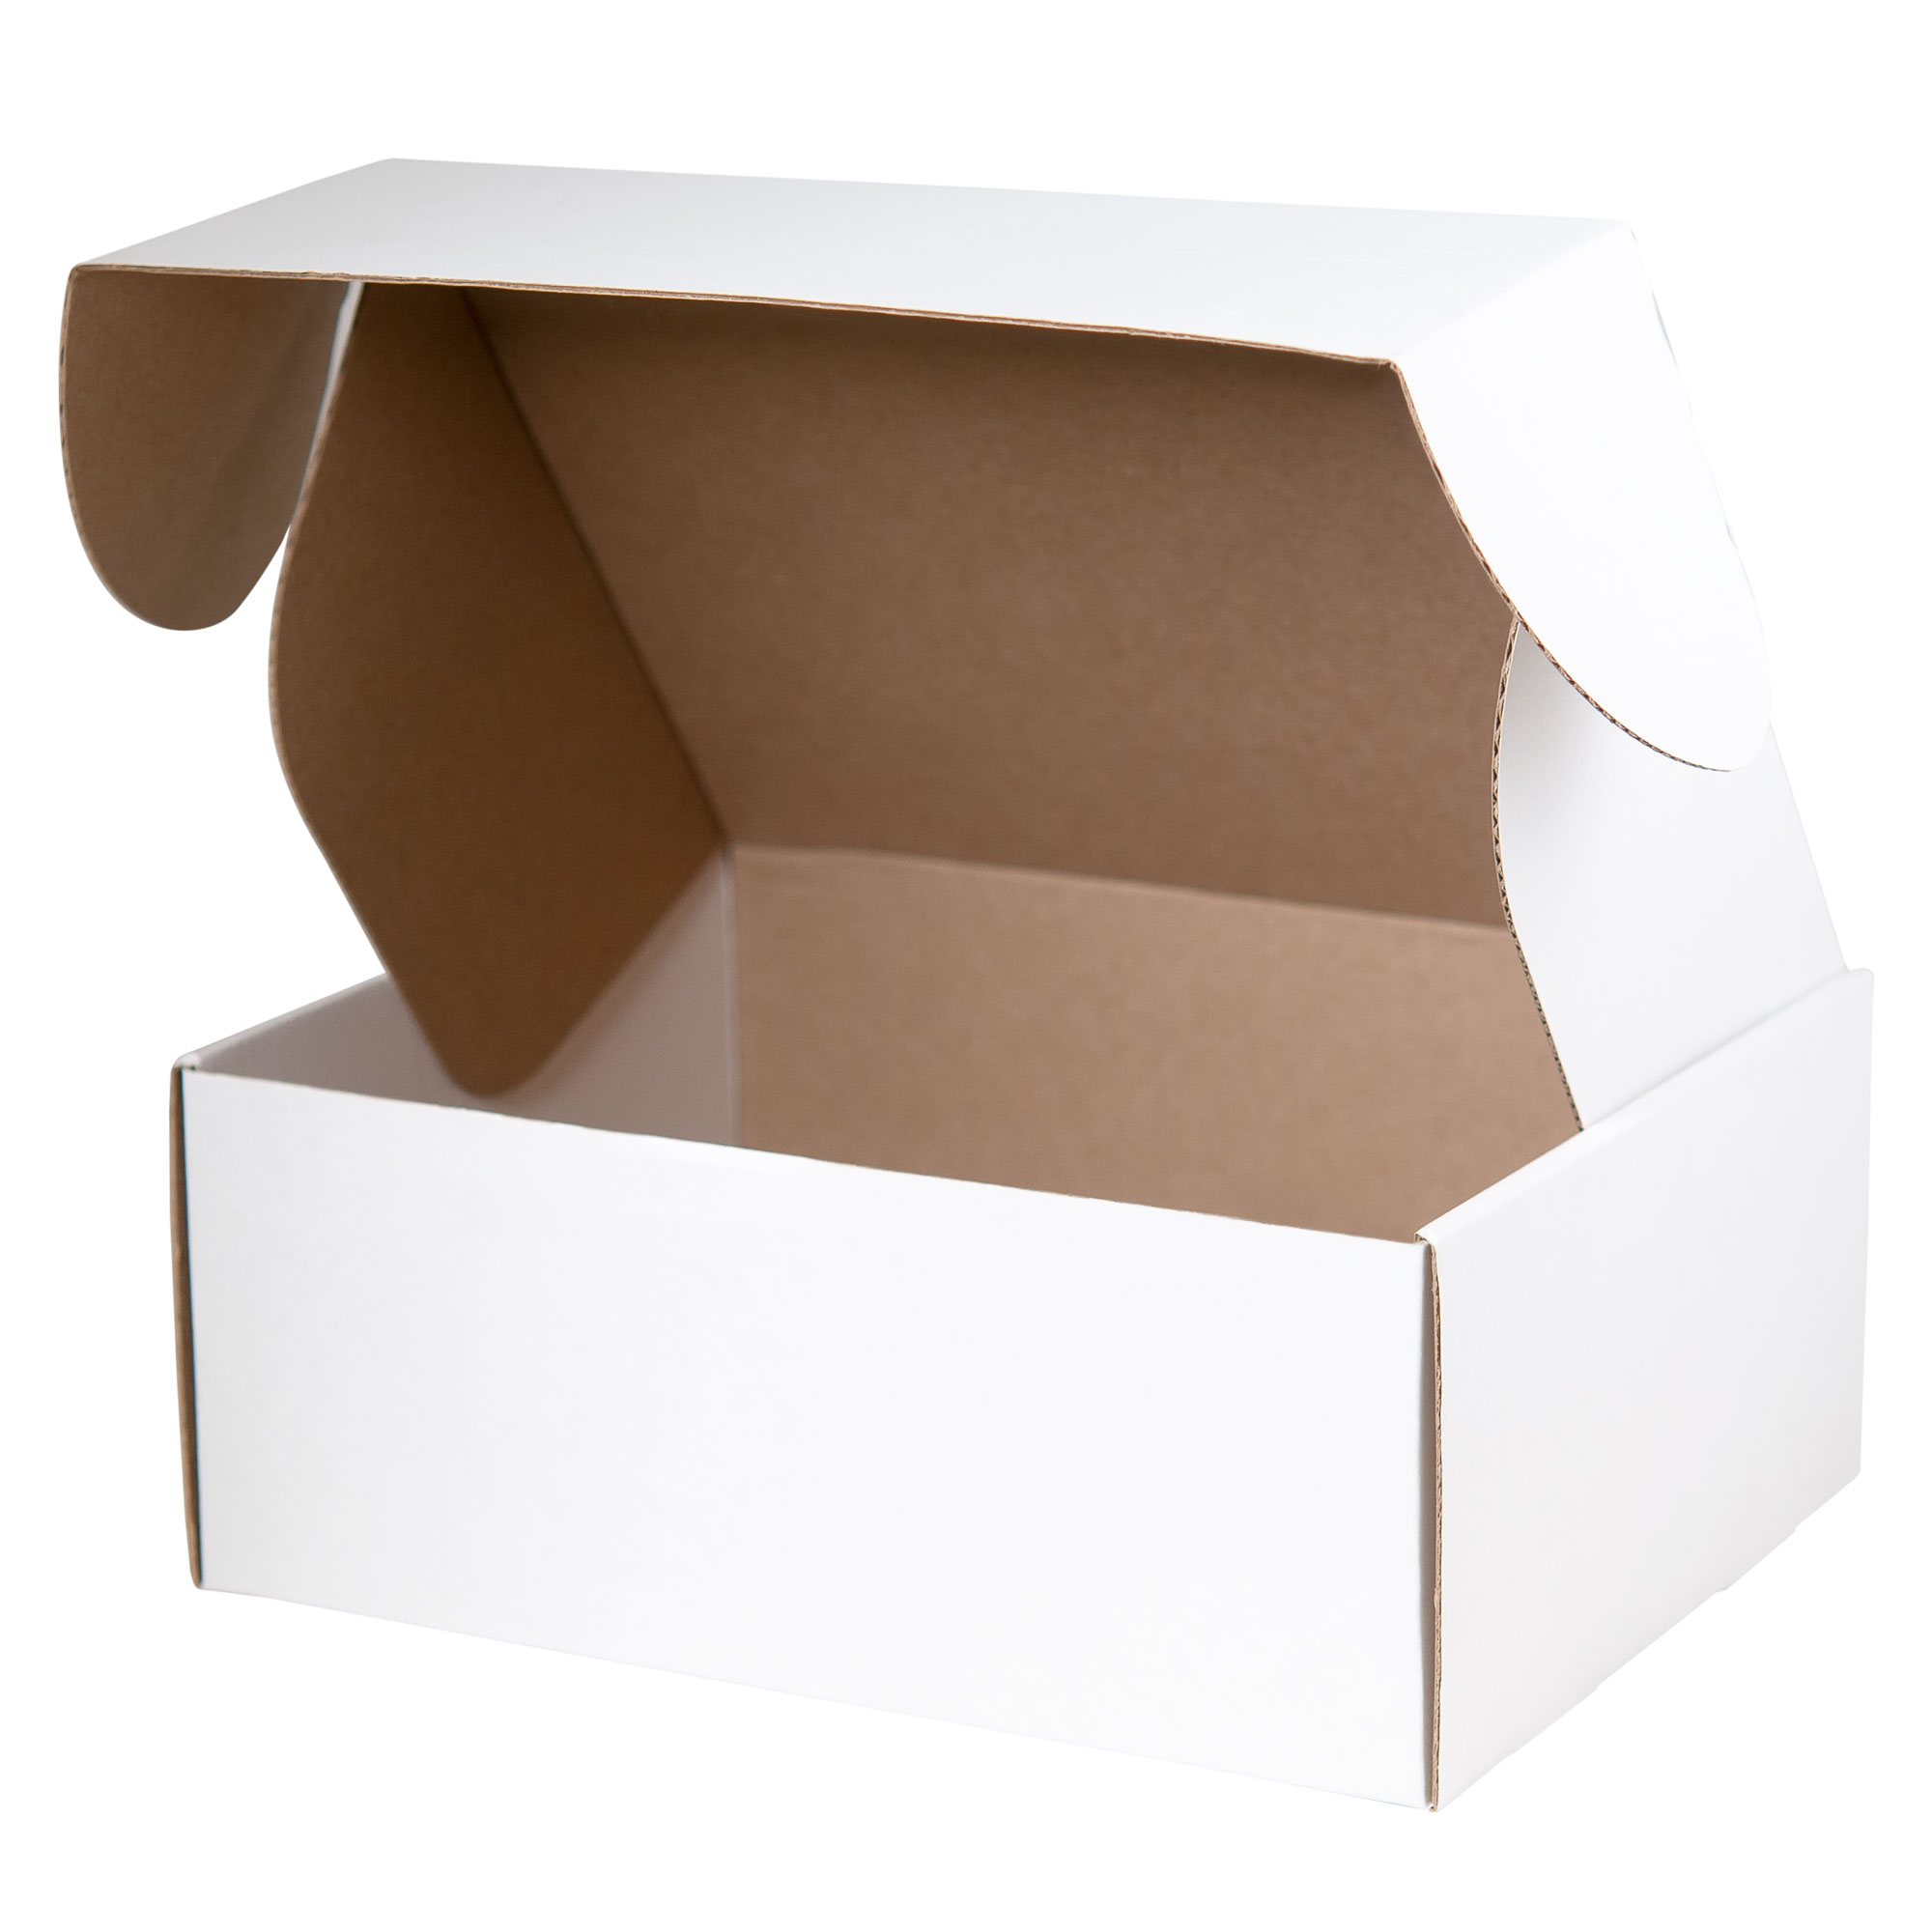 Подарочная коробка для набора универсальная, белая, 280*215*113 мм / 